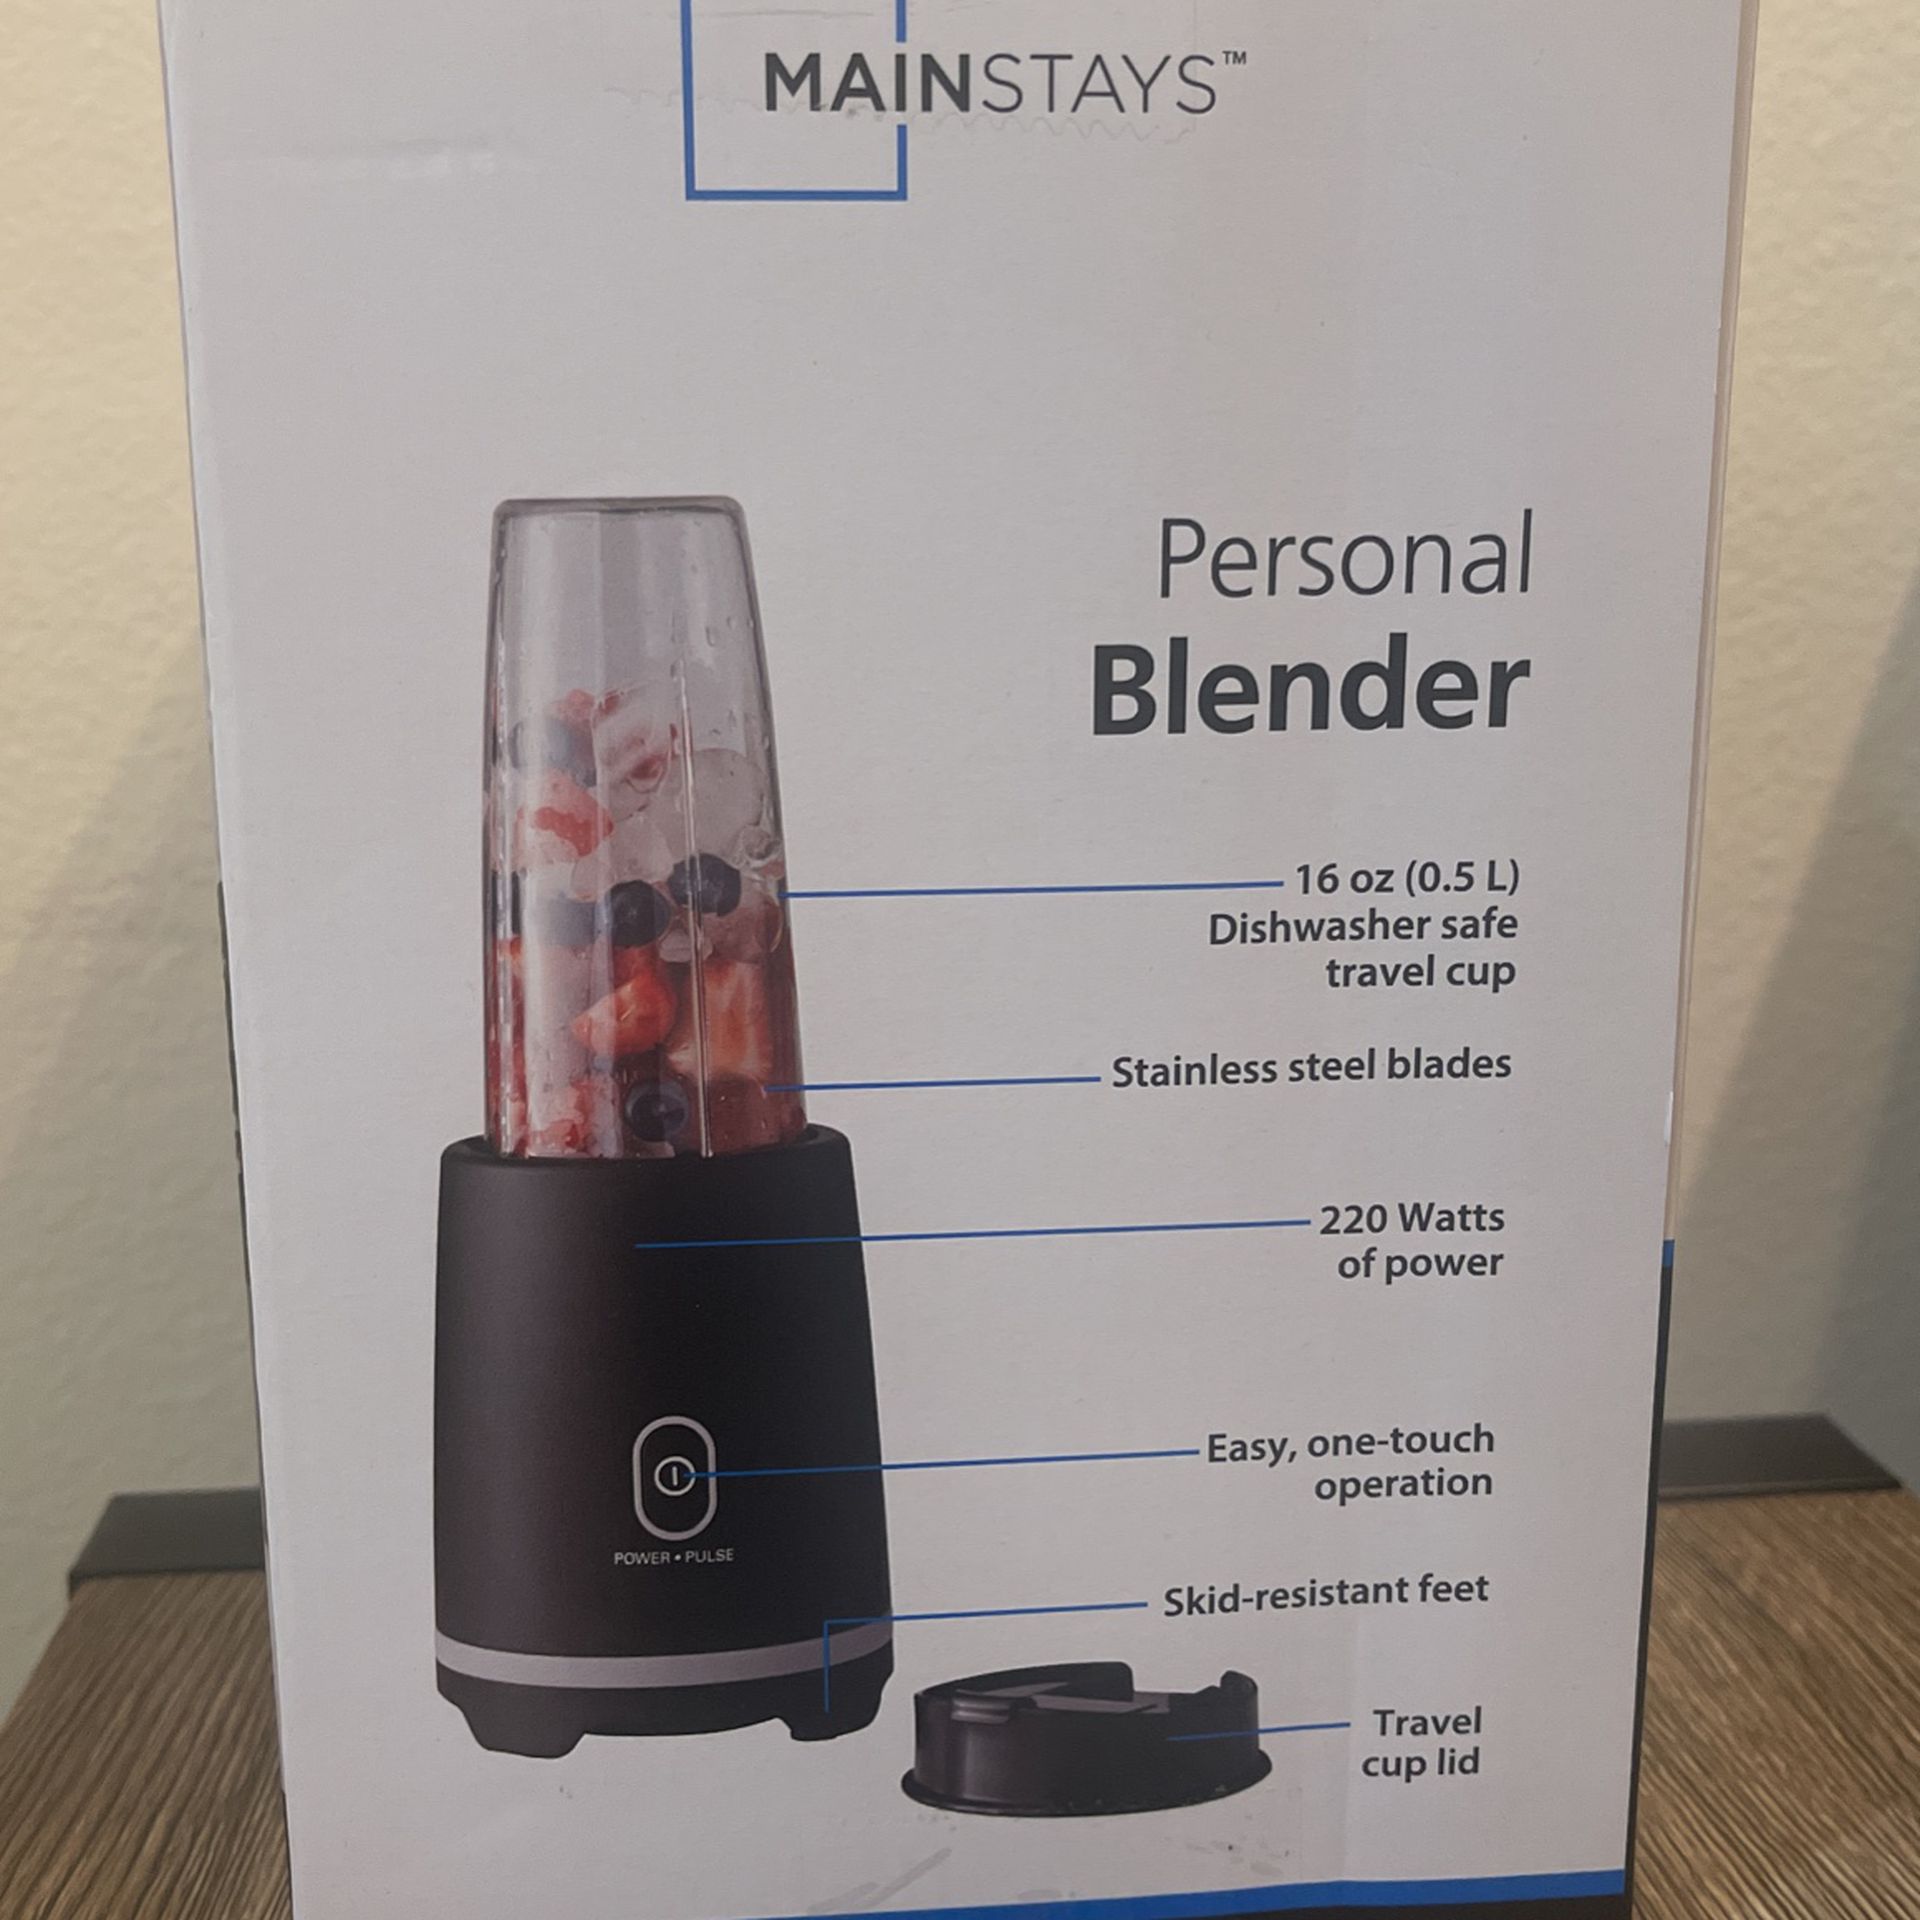 Mainstays Single Serve Blender - Black - 16 oz